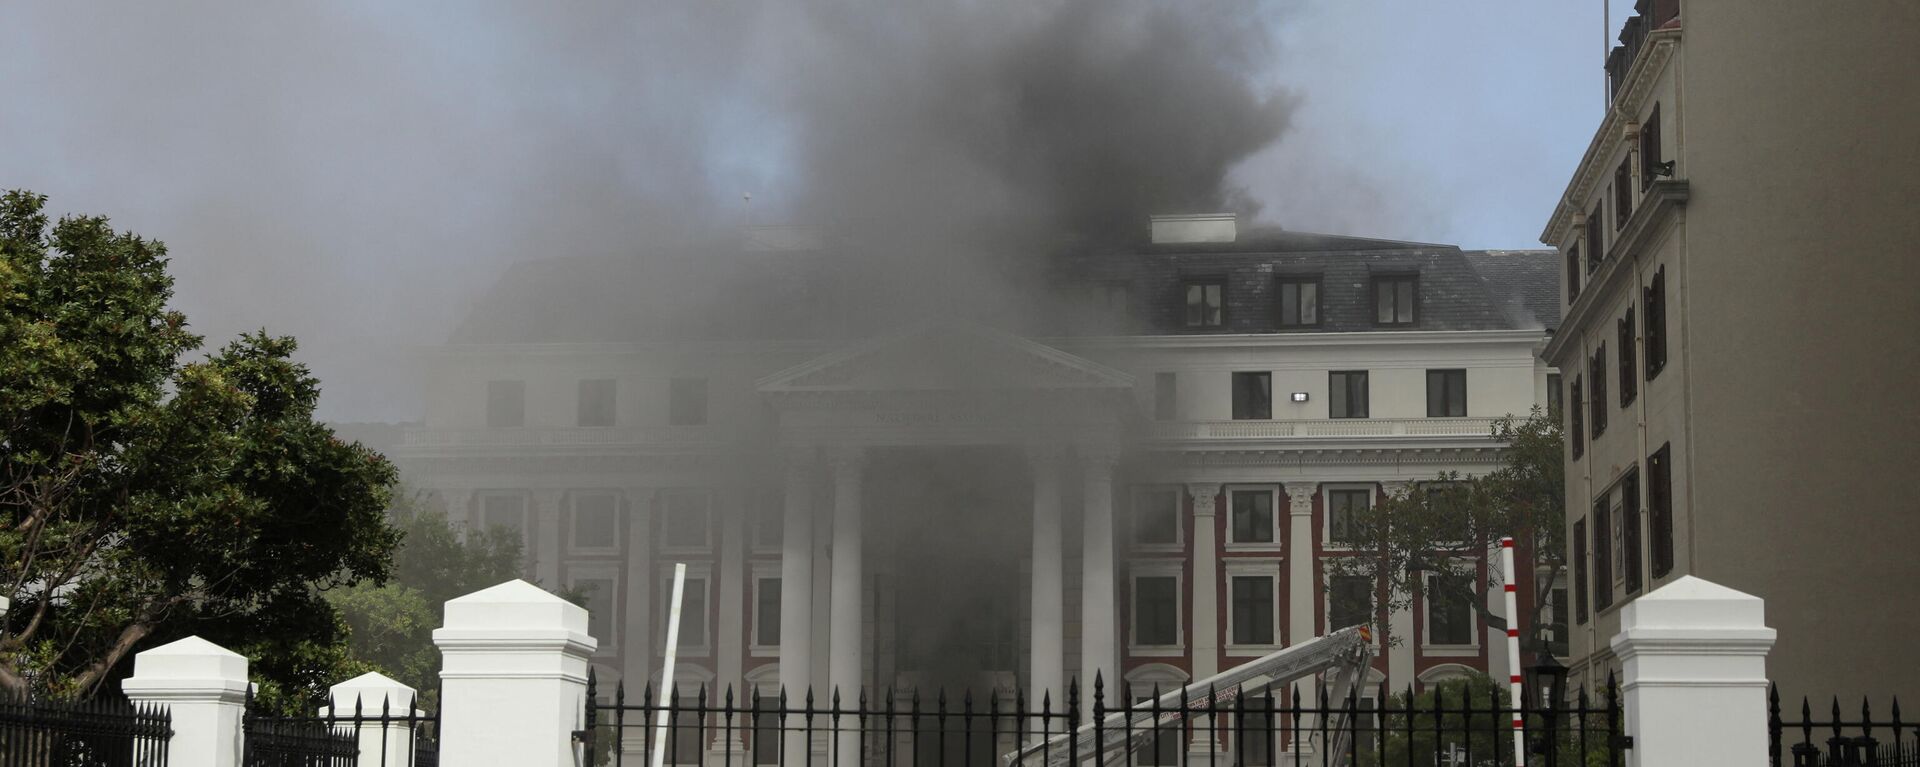 Los bomberos combaten el incendio ocurrido en el Parlamento de Sudáfrica, el 2 de enero de 2022 - Sputnik Mundo, 1920, 02.01.2022